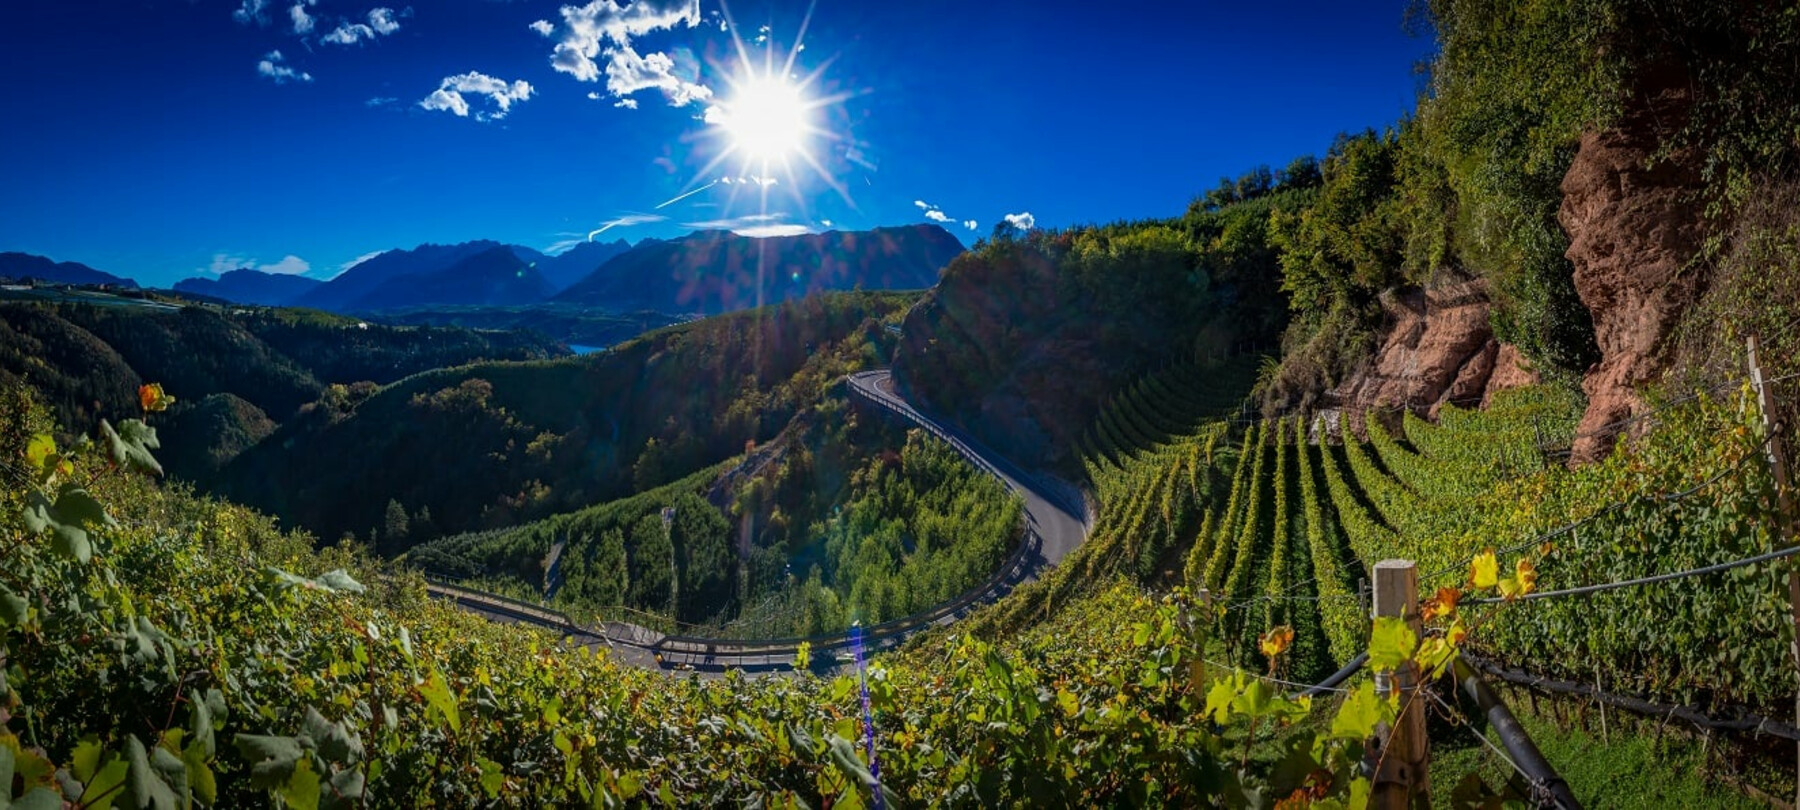 Wine trekking in Trentino